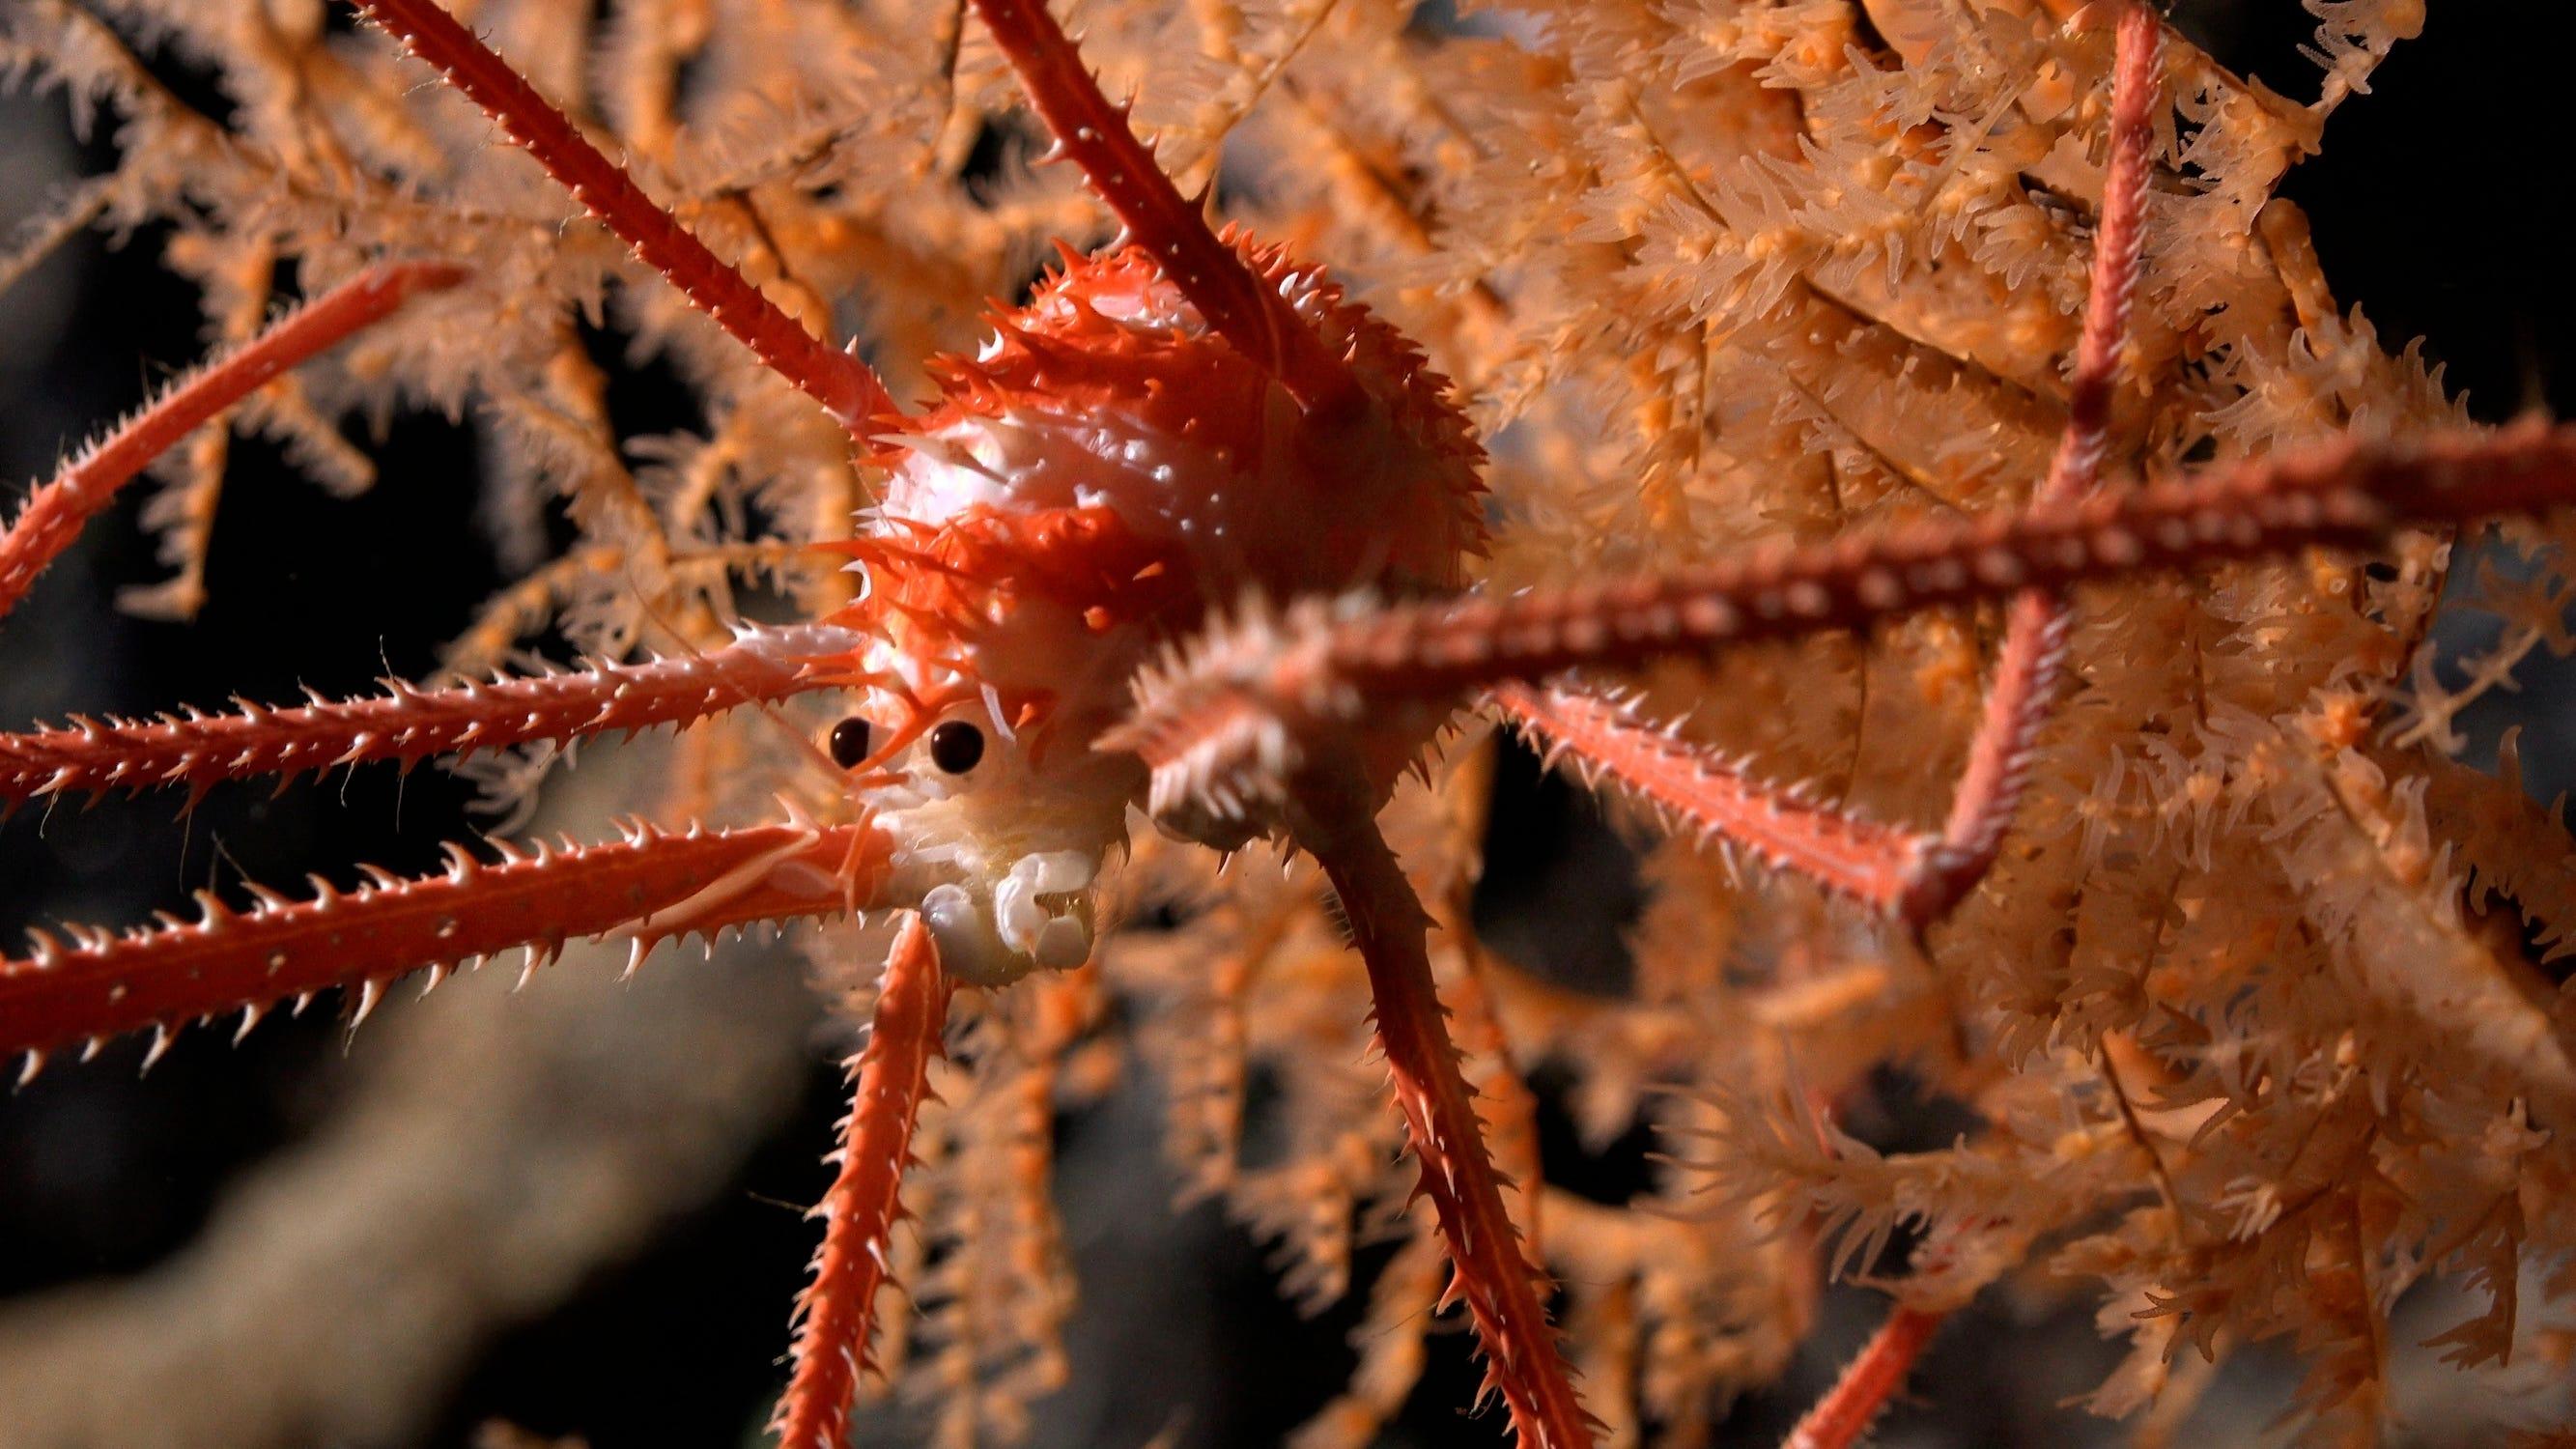 チリ沖の巨大海底山脈で見つかった、色鮮やかで不思議な深海生物たち